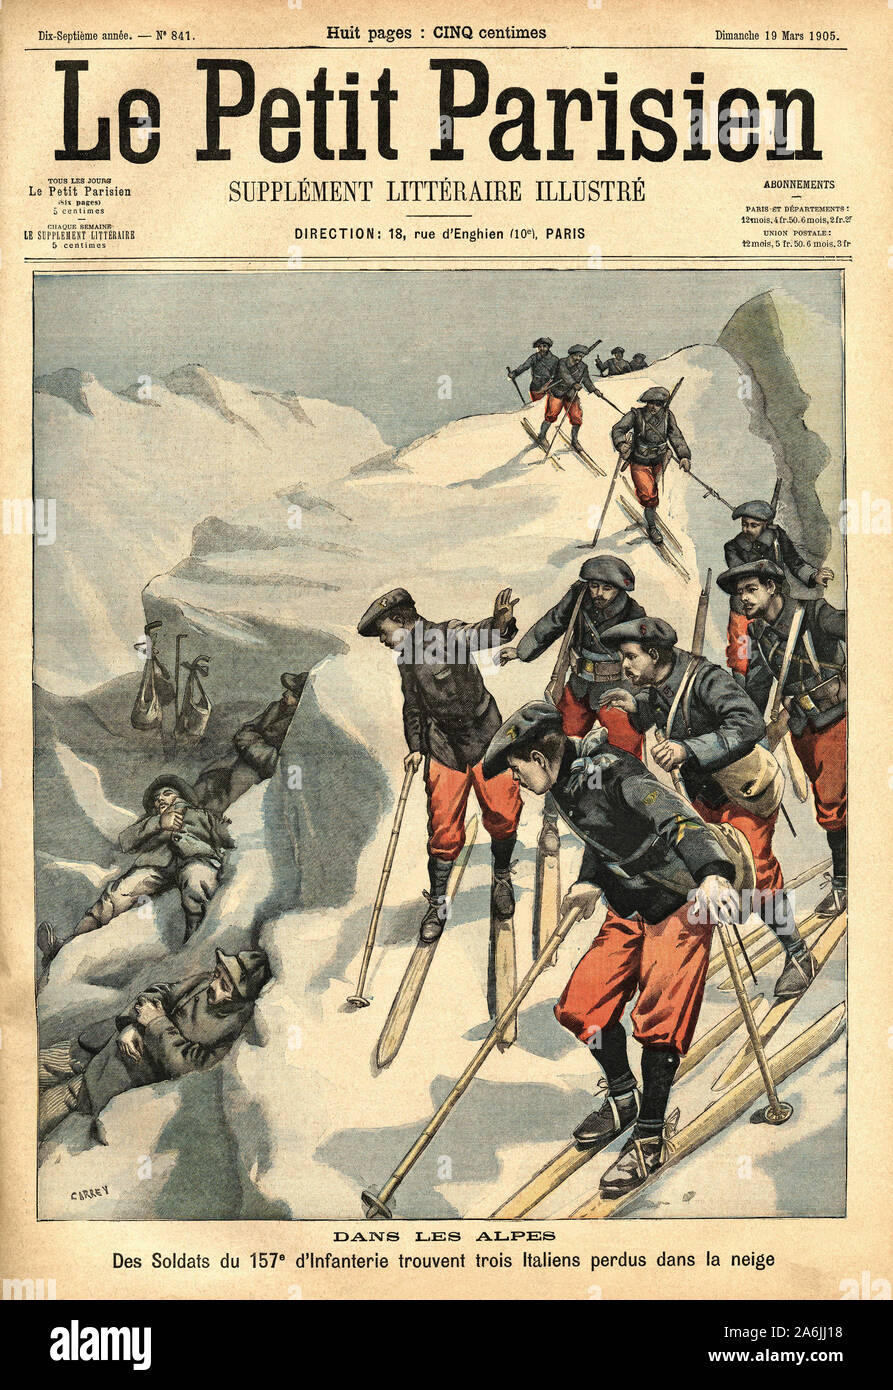 Trois italiens perdus dans les Alpes sont retrouves par les soldats de la 157e Infanterie. Gravure dans "Le Petit Parisien", le 19/03/1905. Banque D'Images